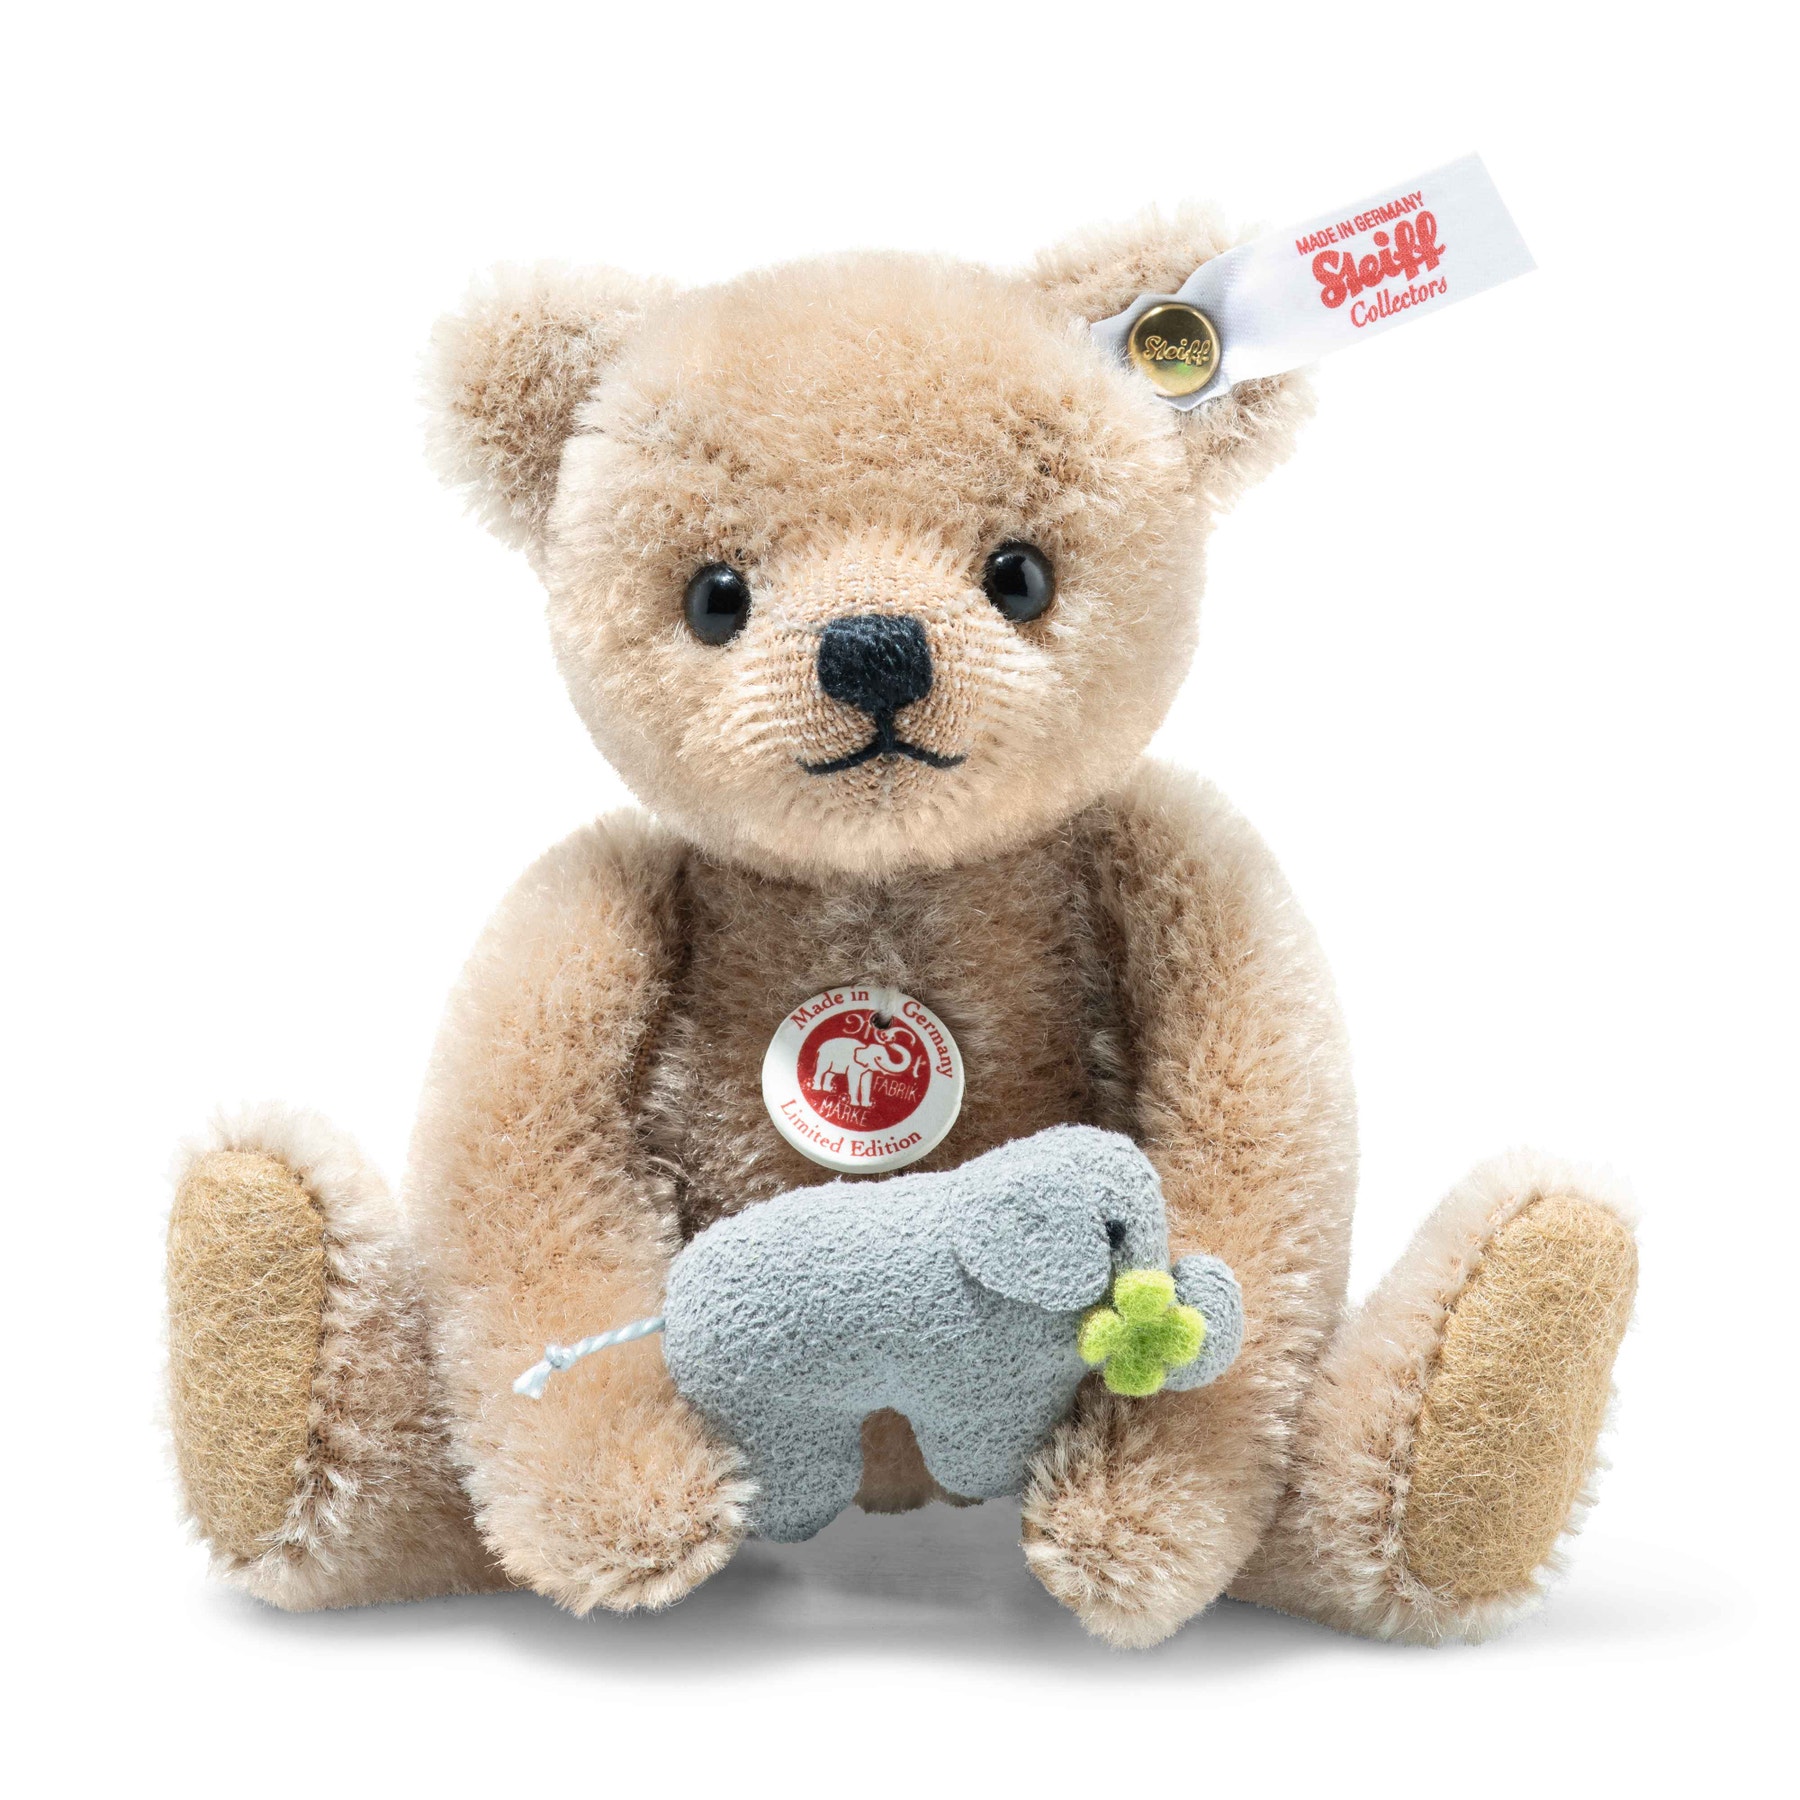 Online Exclusive Savannah Teddy bear